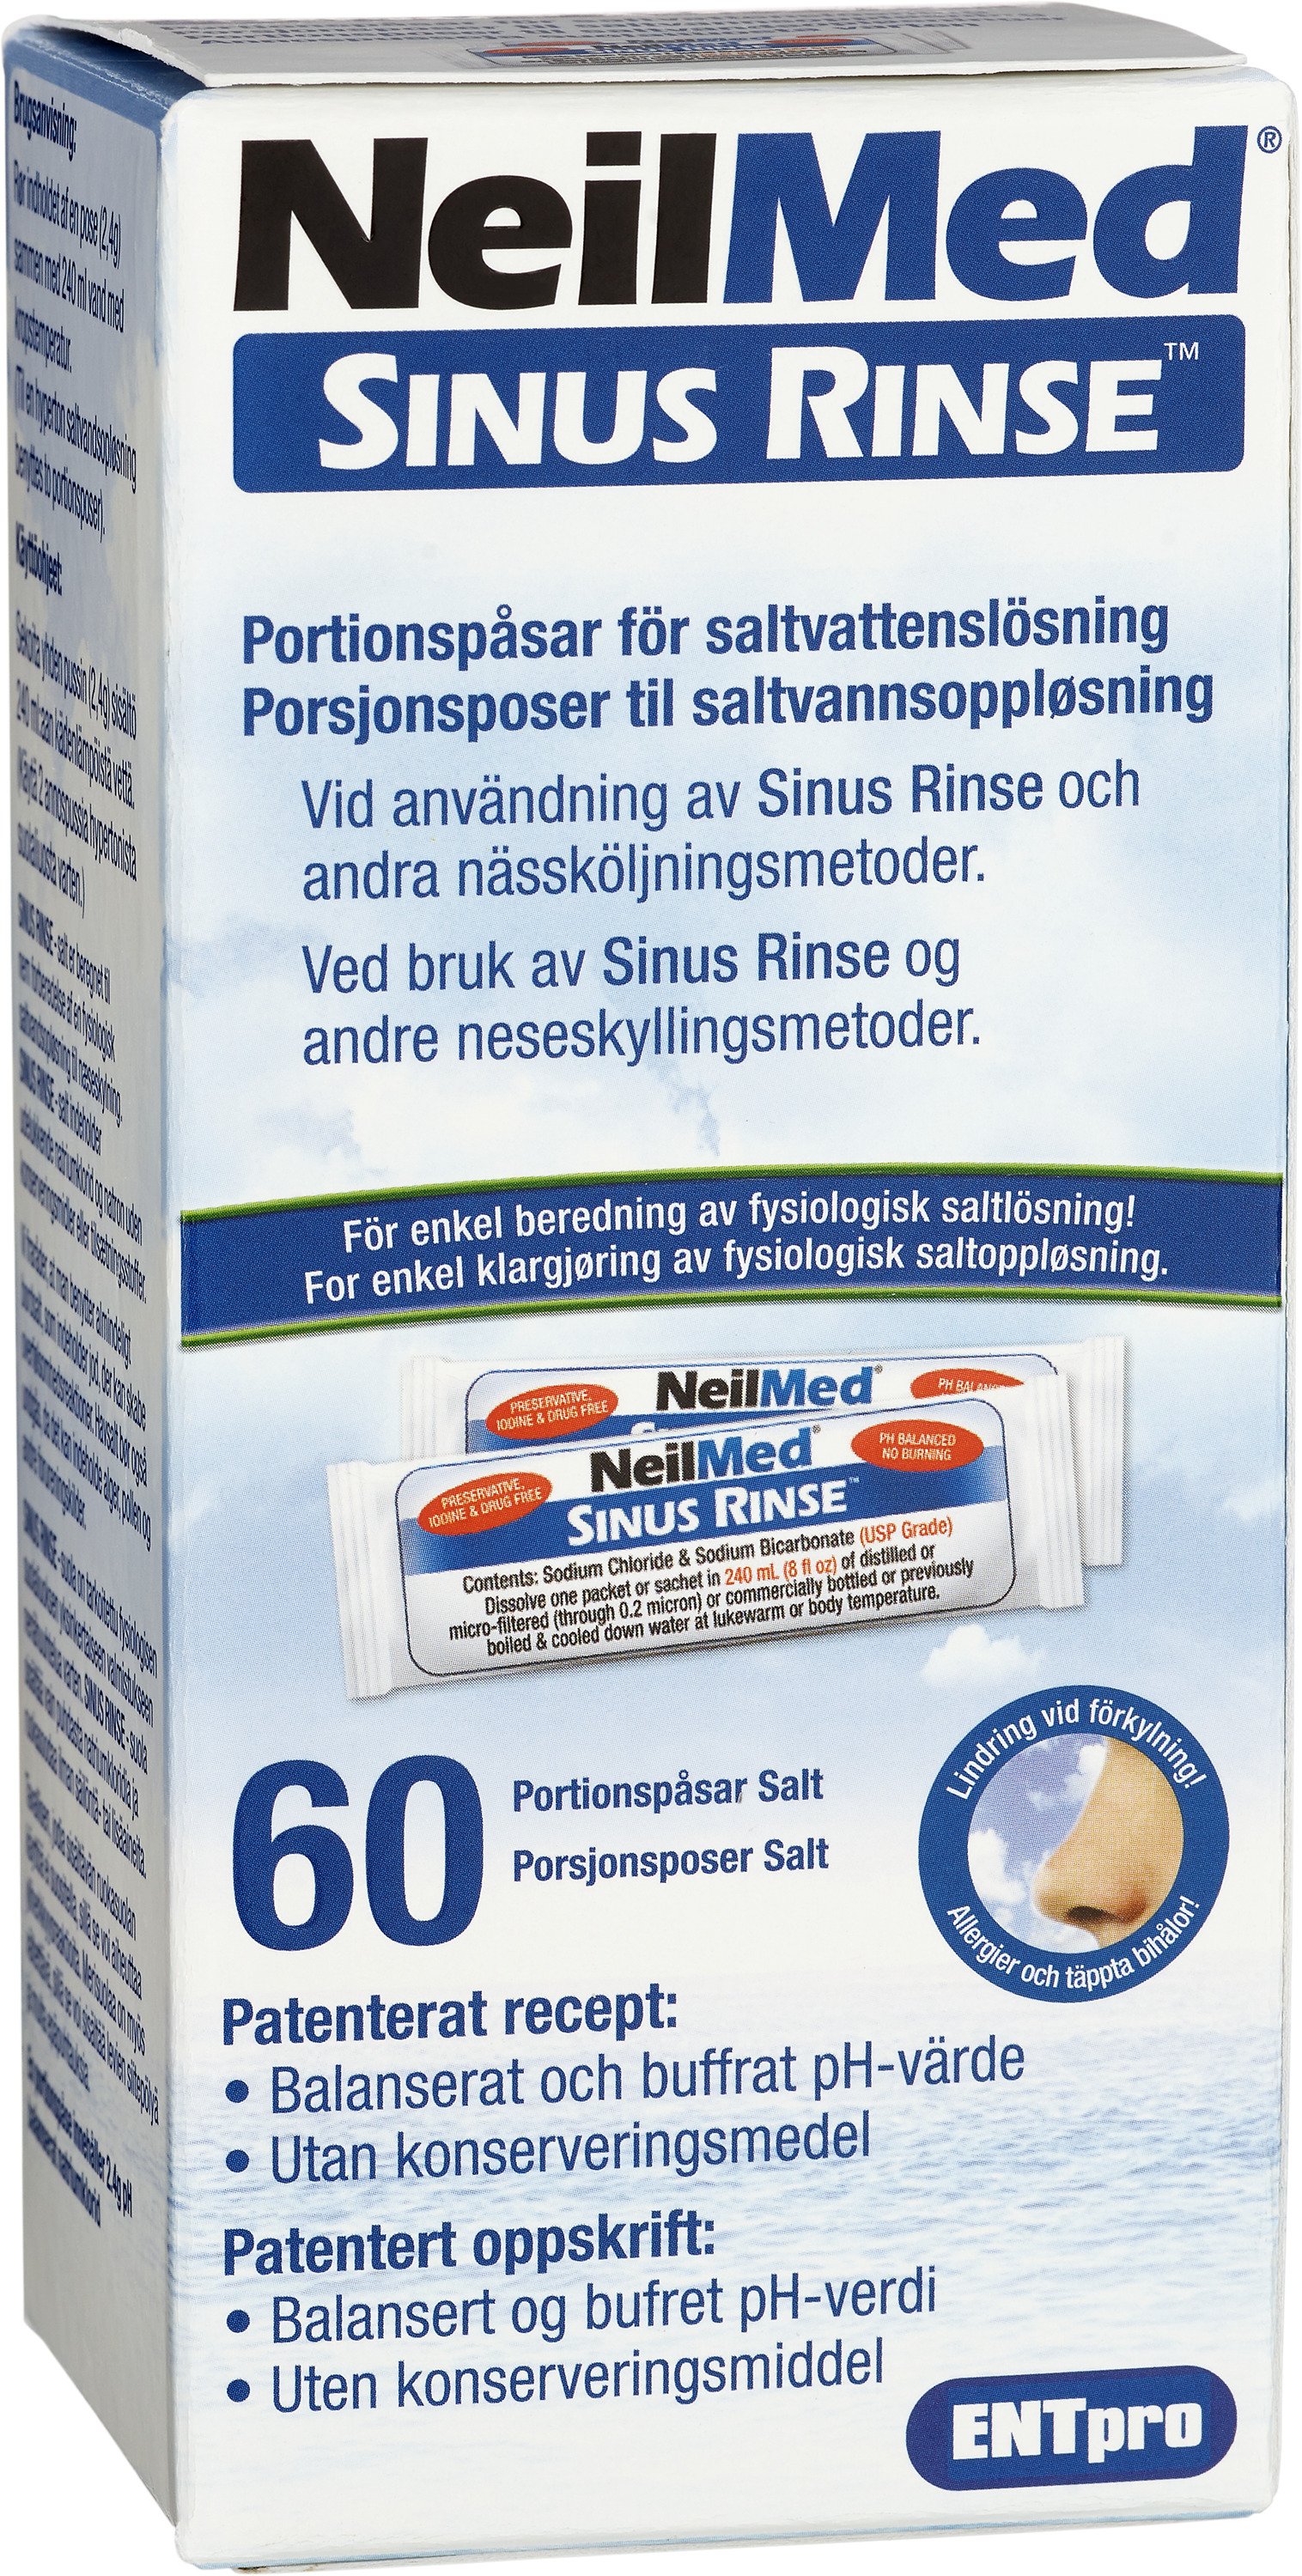 NeilMed Sinus Rinse Salt 60 portionspåsar